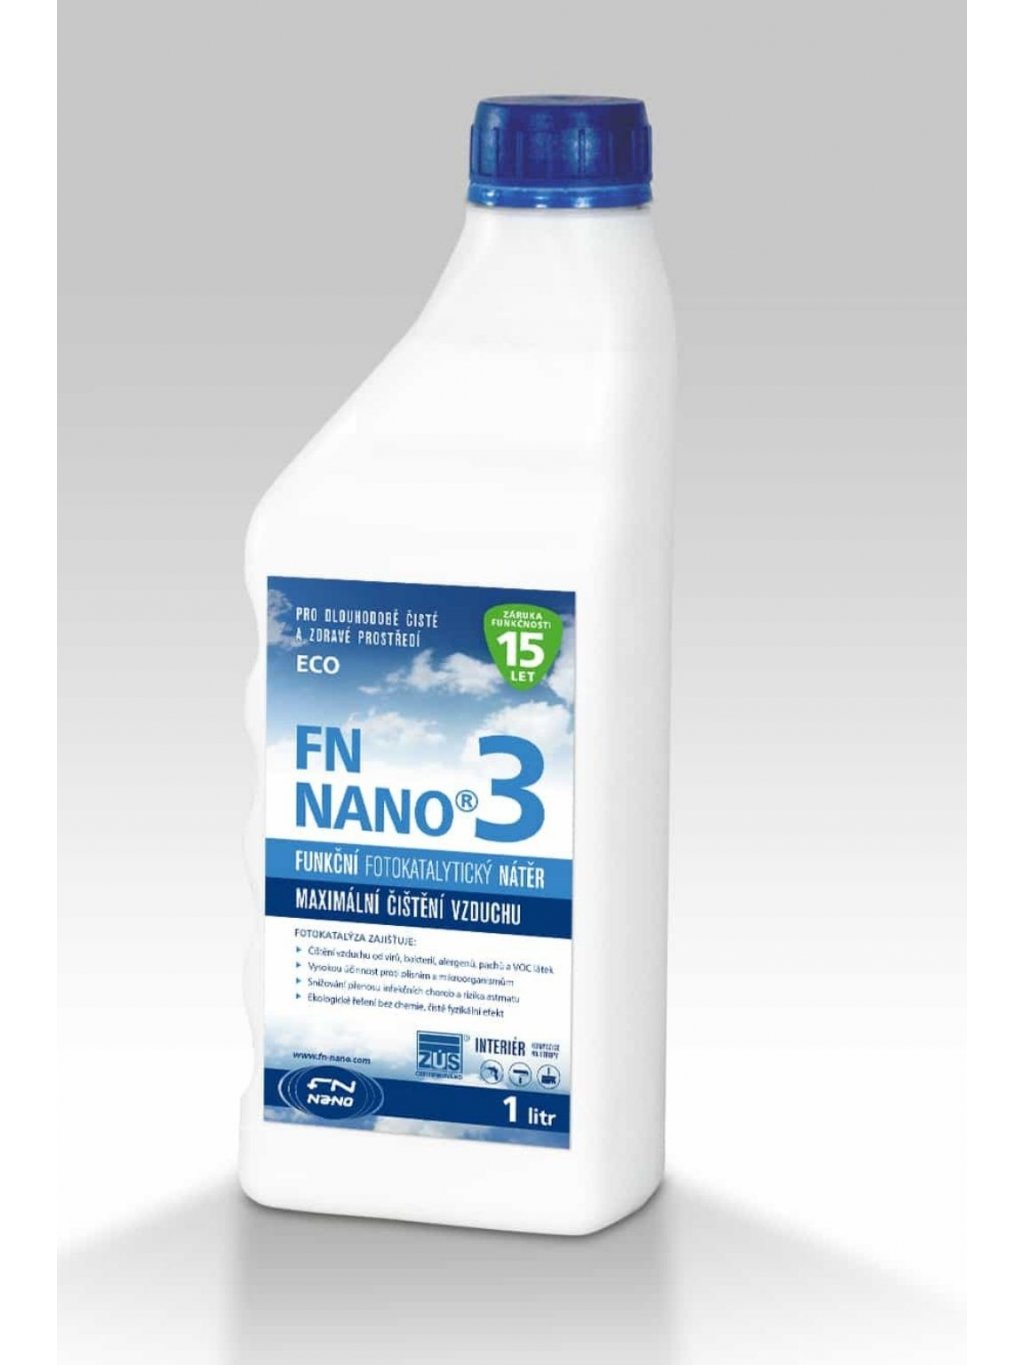 Fotokatalytický nátěr FN NANO®3 vnitřní použití (Objem 1 litr)